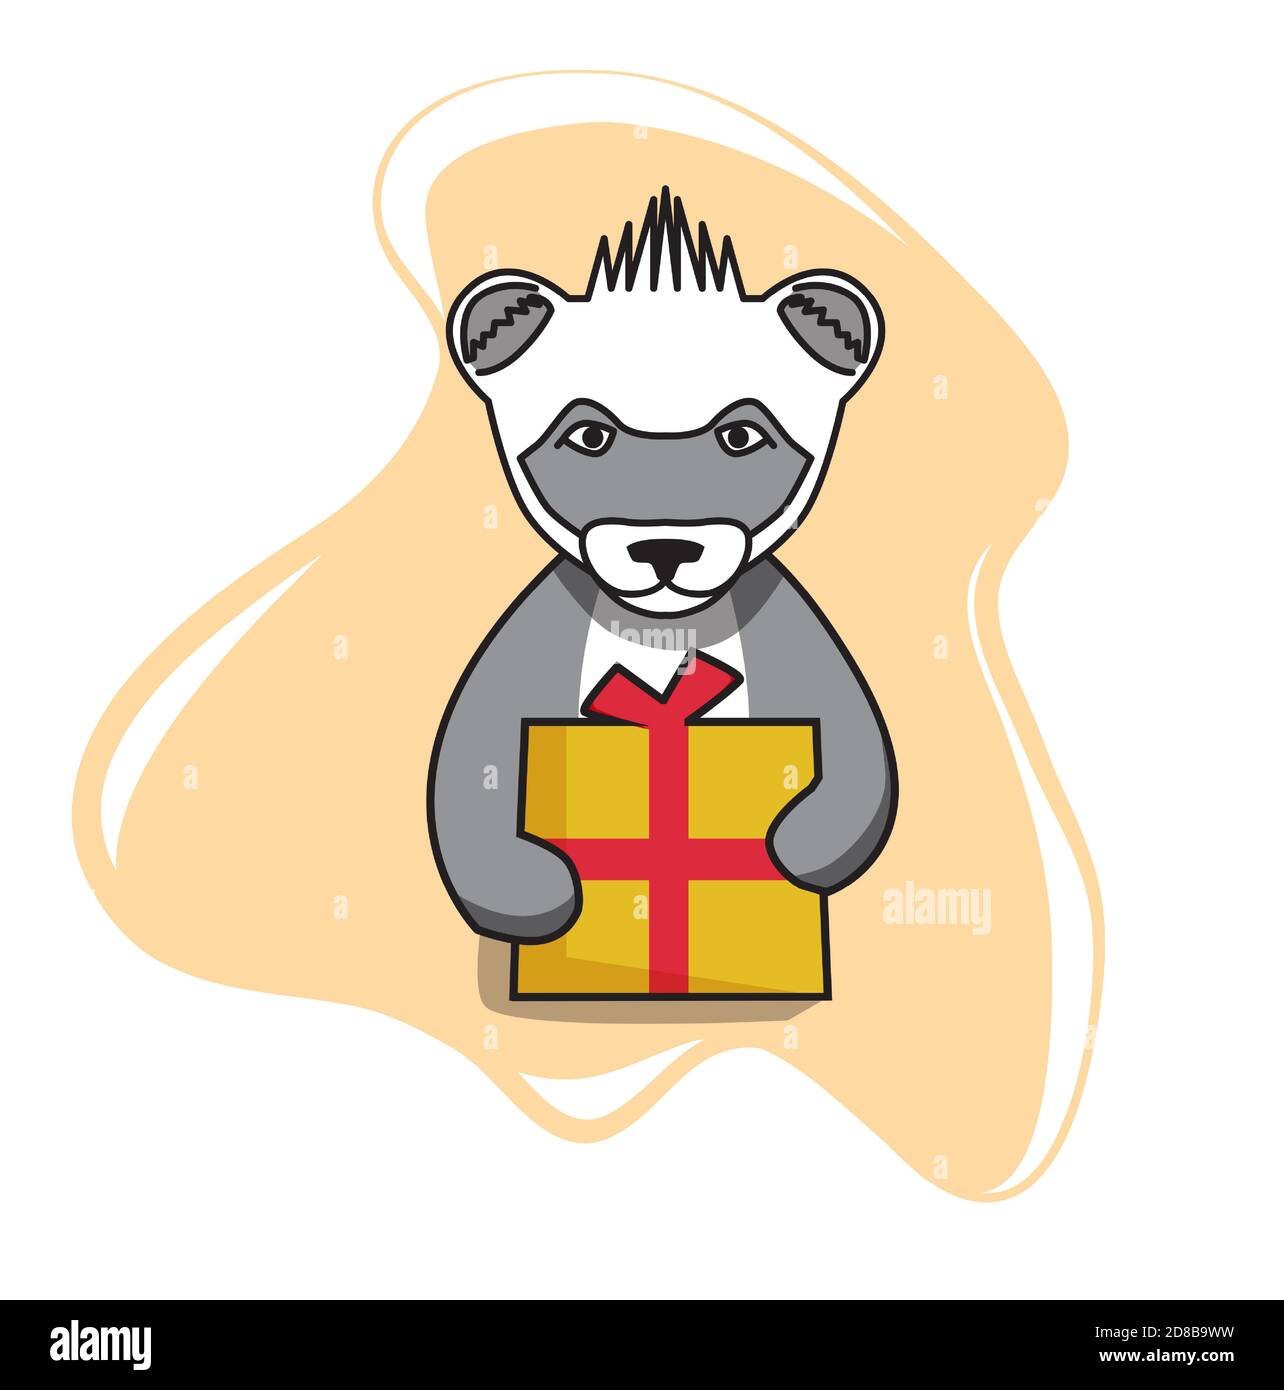 El mapache da una caja de regalo. Ilustración de animales en estilo plano. Ilustración del Vector